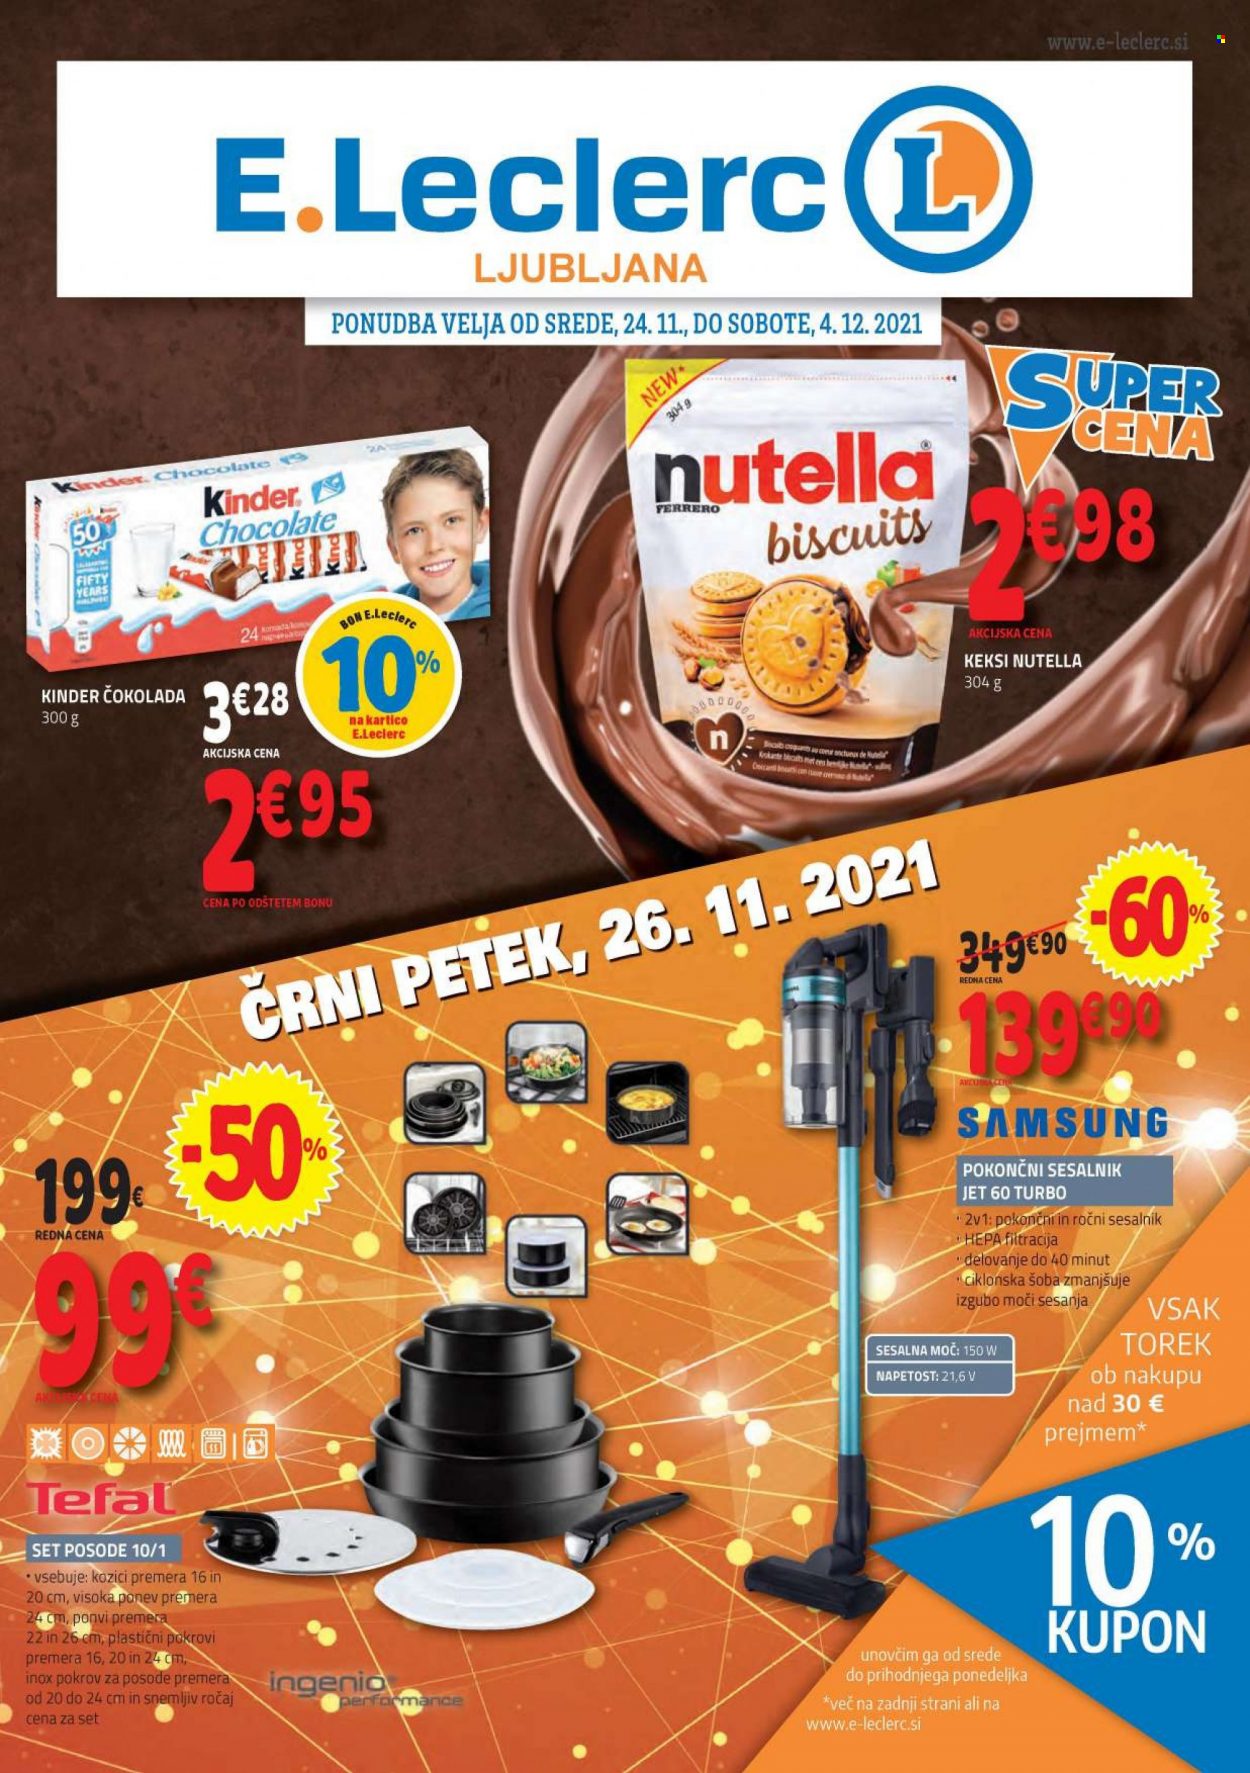 thumbnail - E.Leclerc katalog - 24.11.2021 - 4.12.2021 - Ponudba izdelkov - Samsung, čokolada, keksi, Nutella, sesalnik. Stran 1.